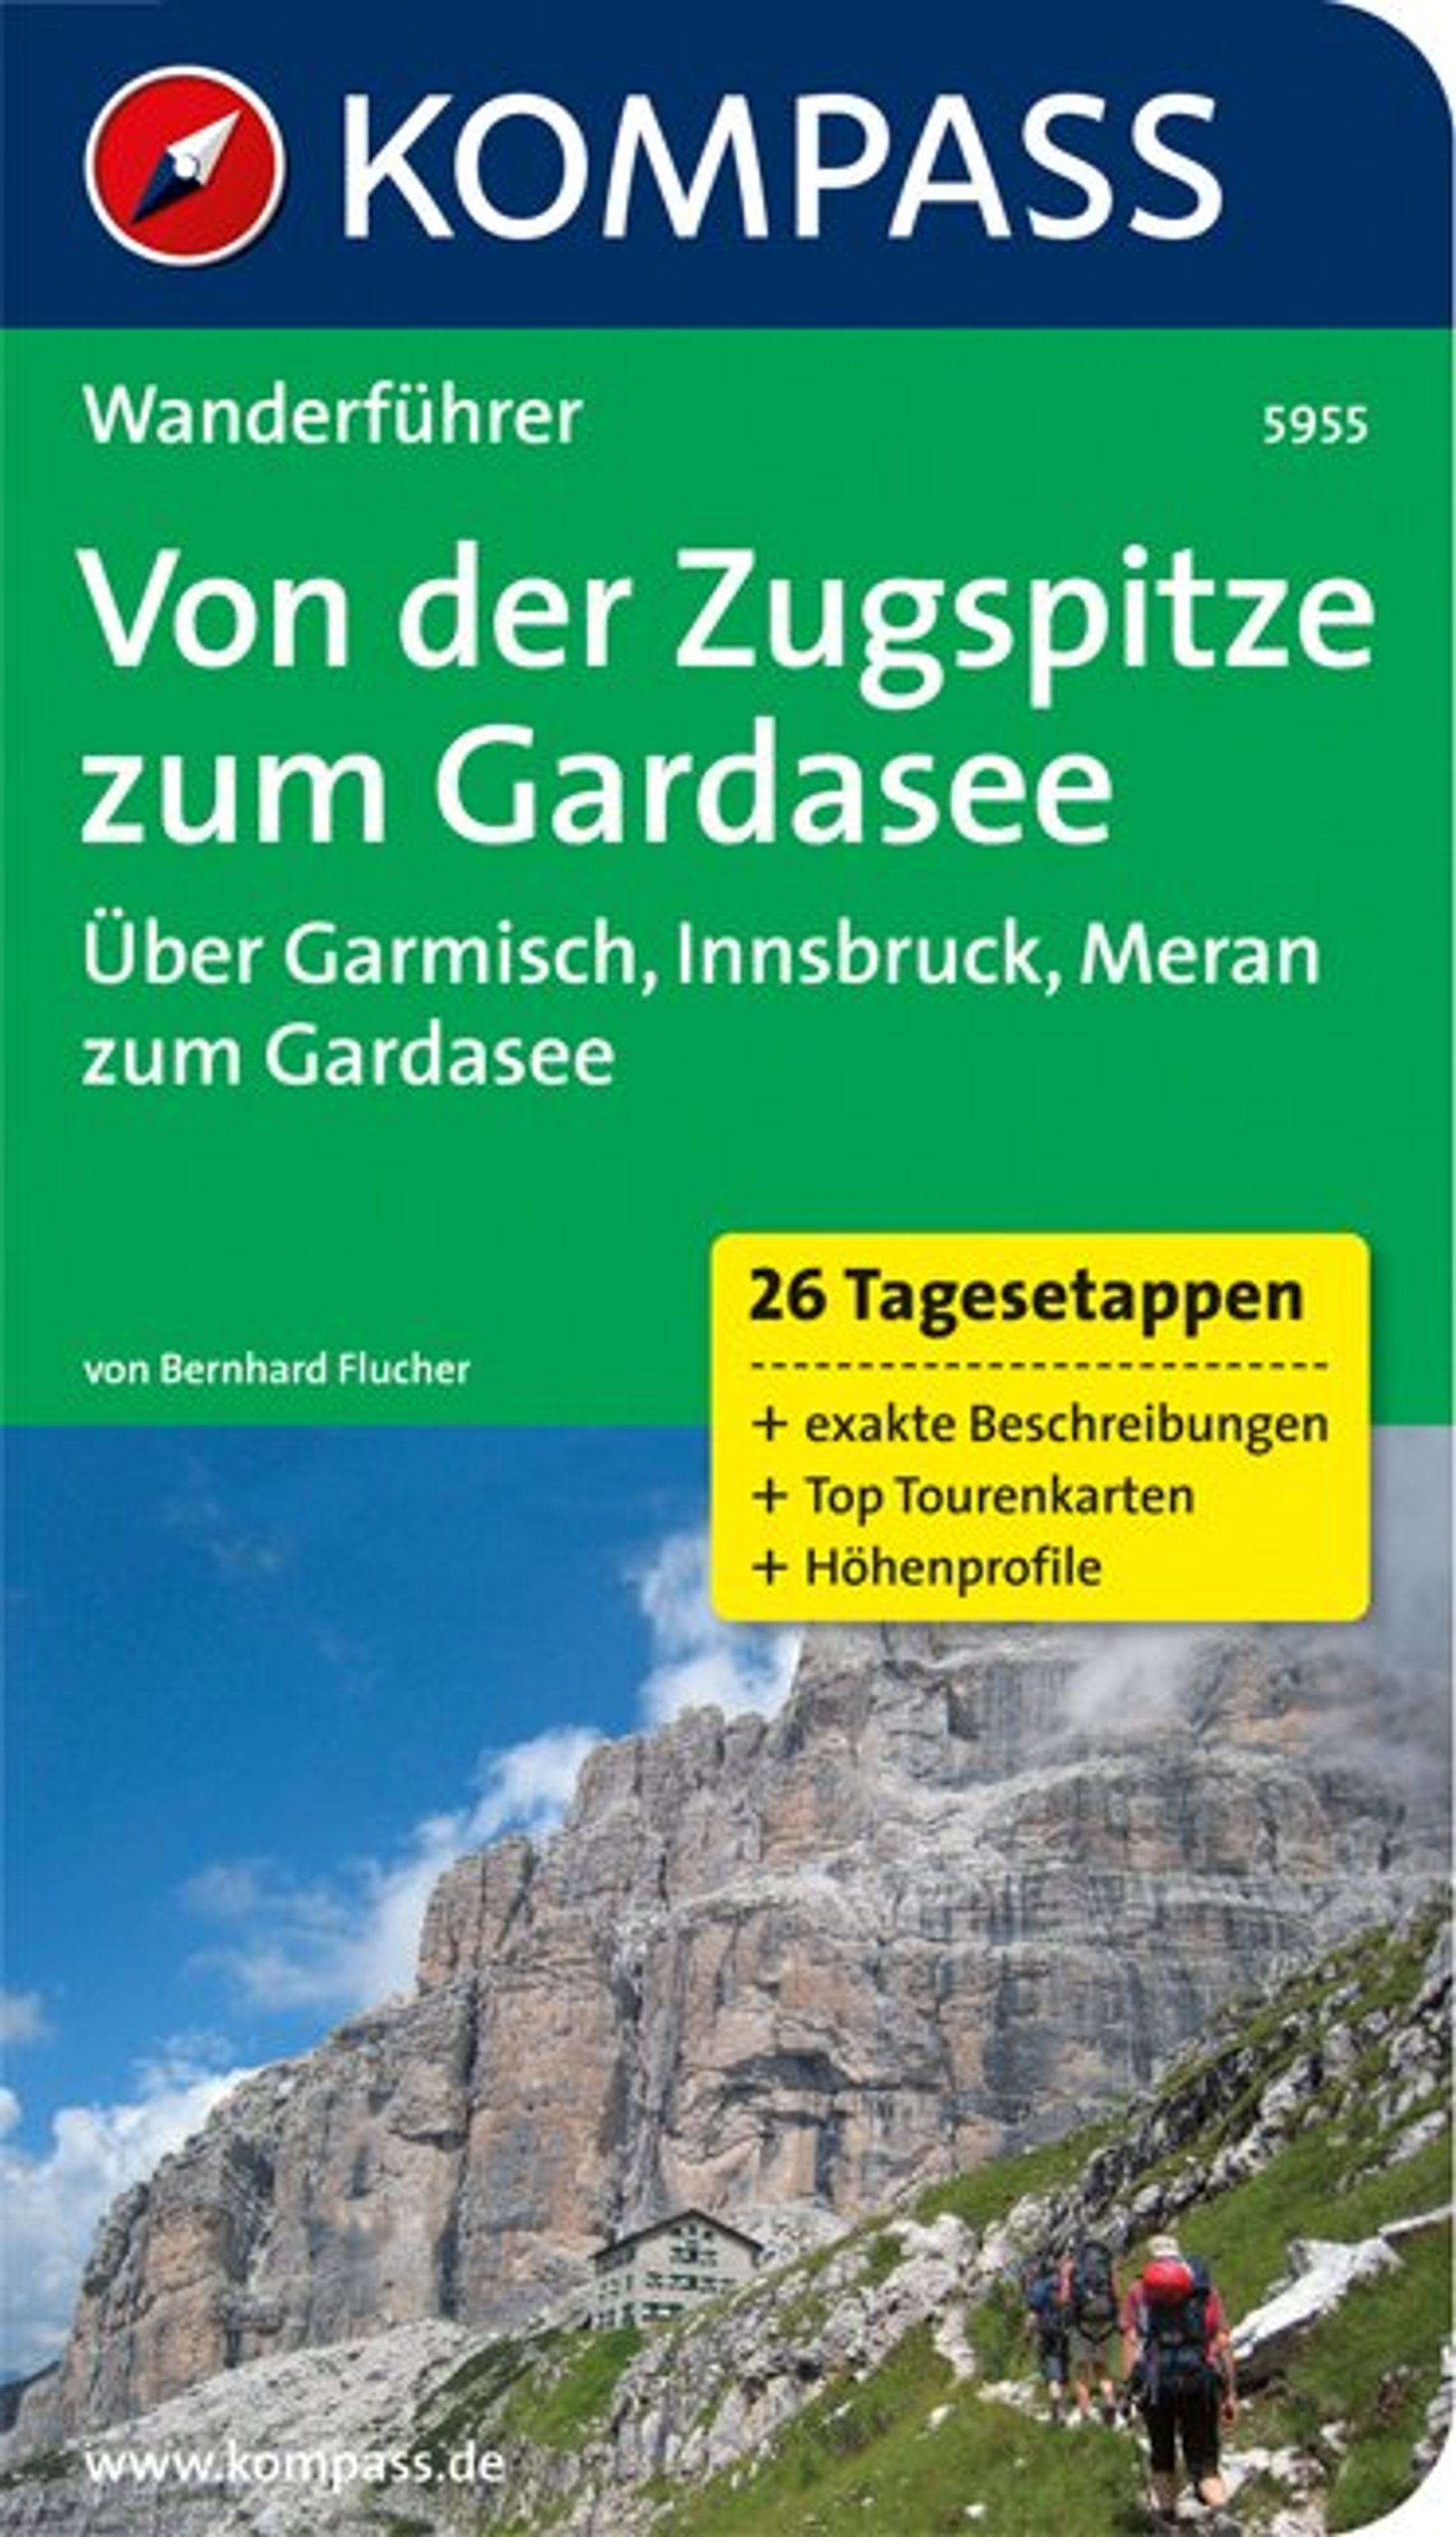 MAIRDUMONT Von der Zugspitze zum Gardasee, Weitwanderführer, 26 Tagesetappen mit Extra-Tourenkarte